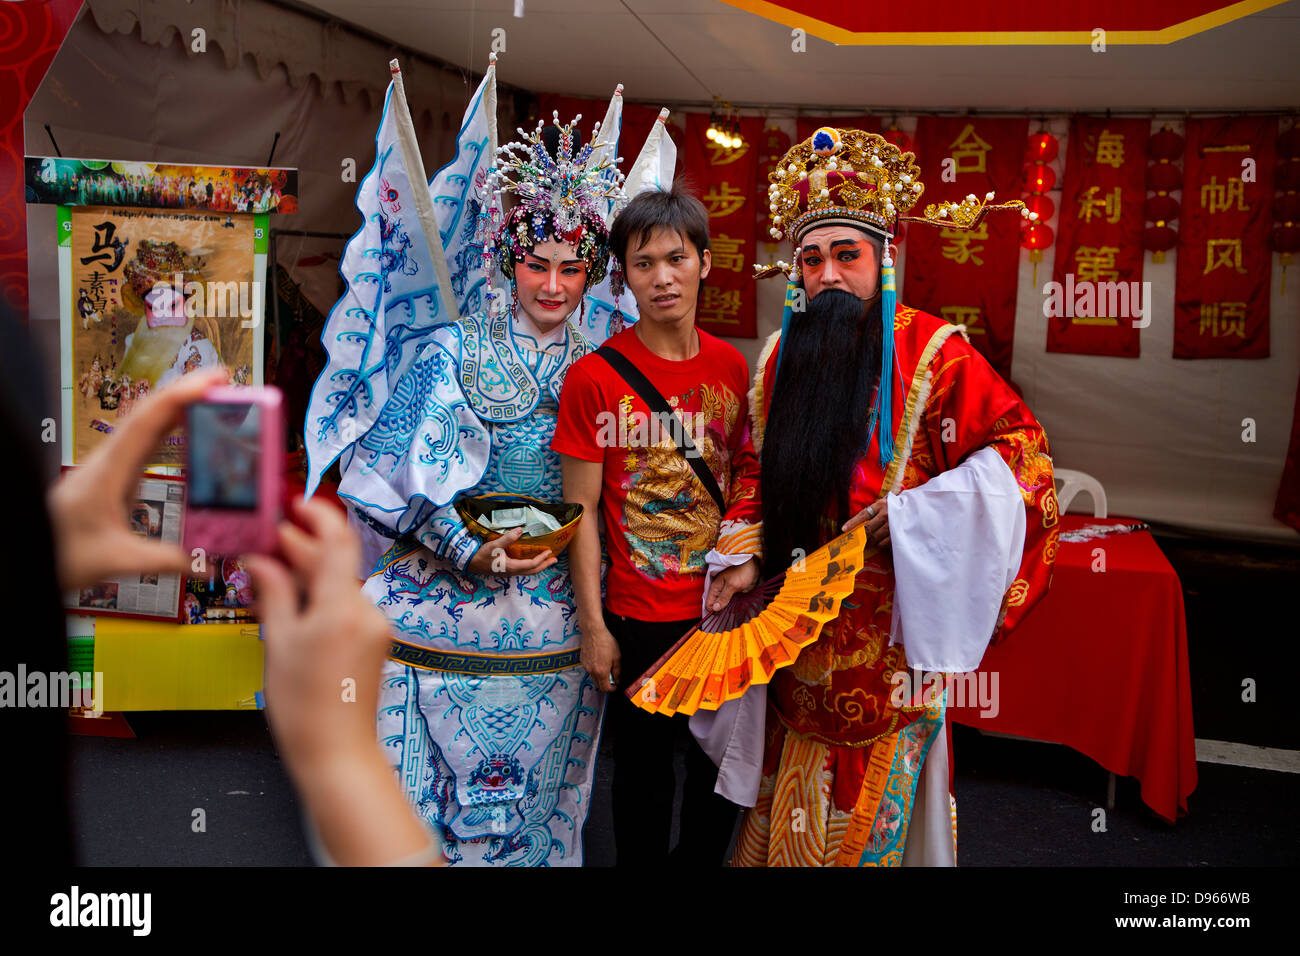 Chinesische Touristen fotografierten mit chinesischen Schriftzeichen Mythalogical während des chinesischen Neujahrsfestes in Bangkok Stockfoto